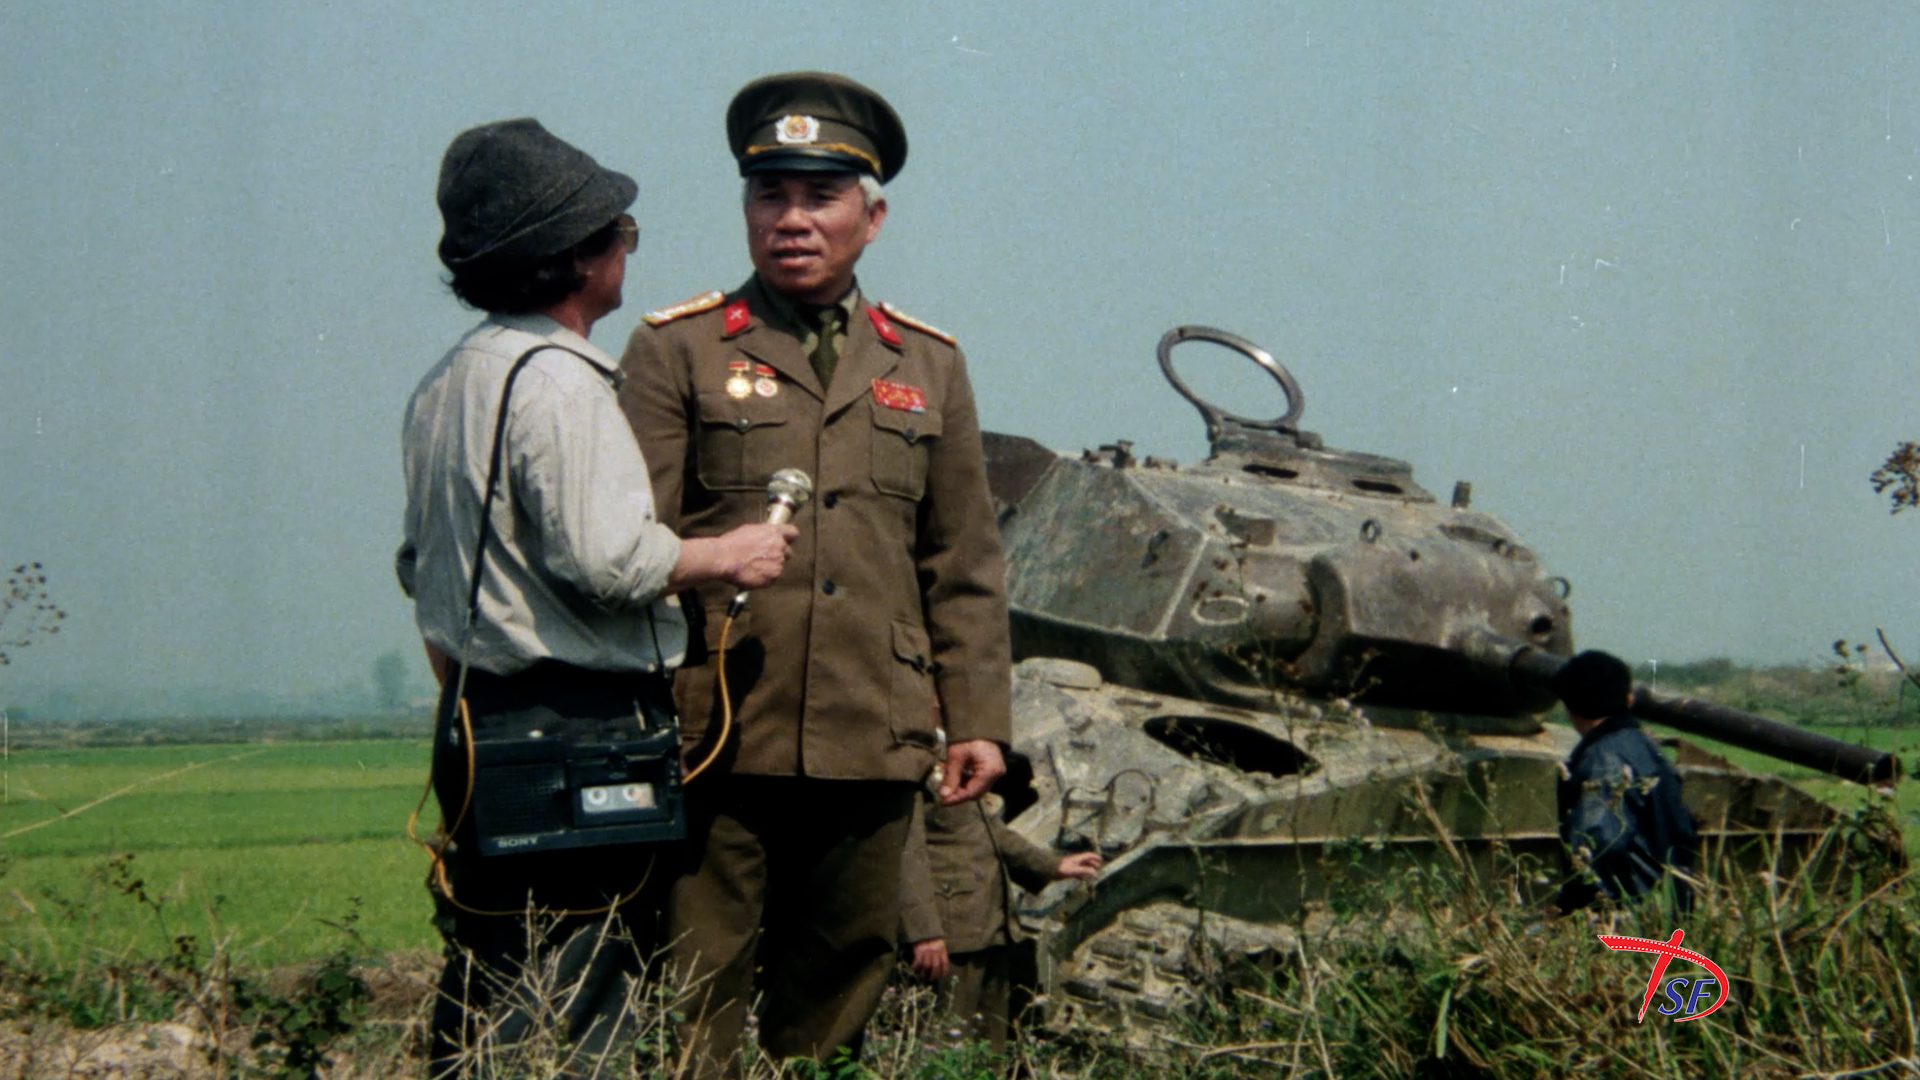 Chiếu miễn phí 6 phim tài liệu chân thực nhất về chiến thắng Điện Biên Phủ- Ảnh 6.